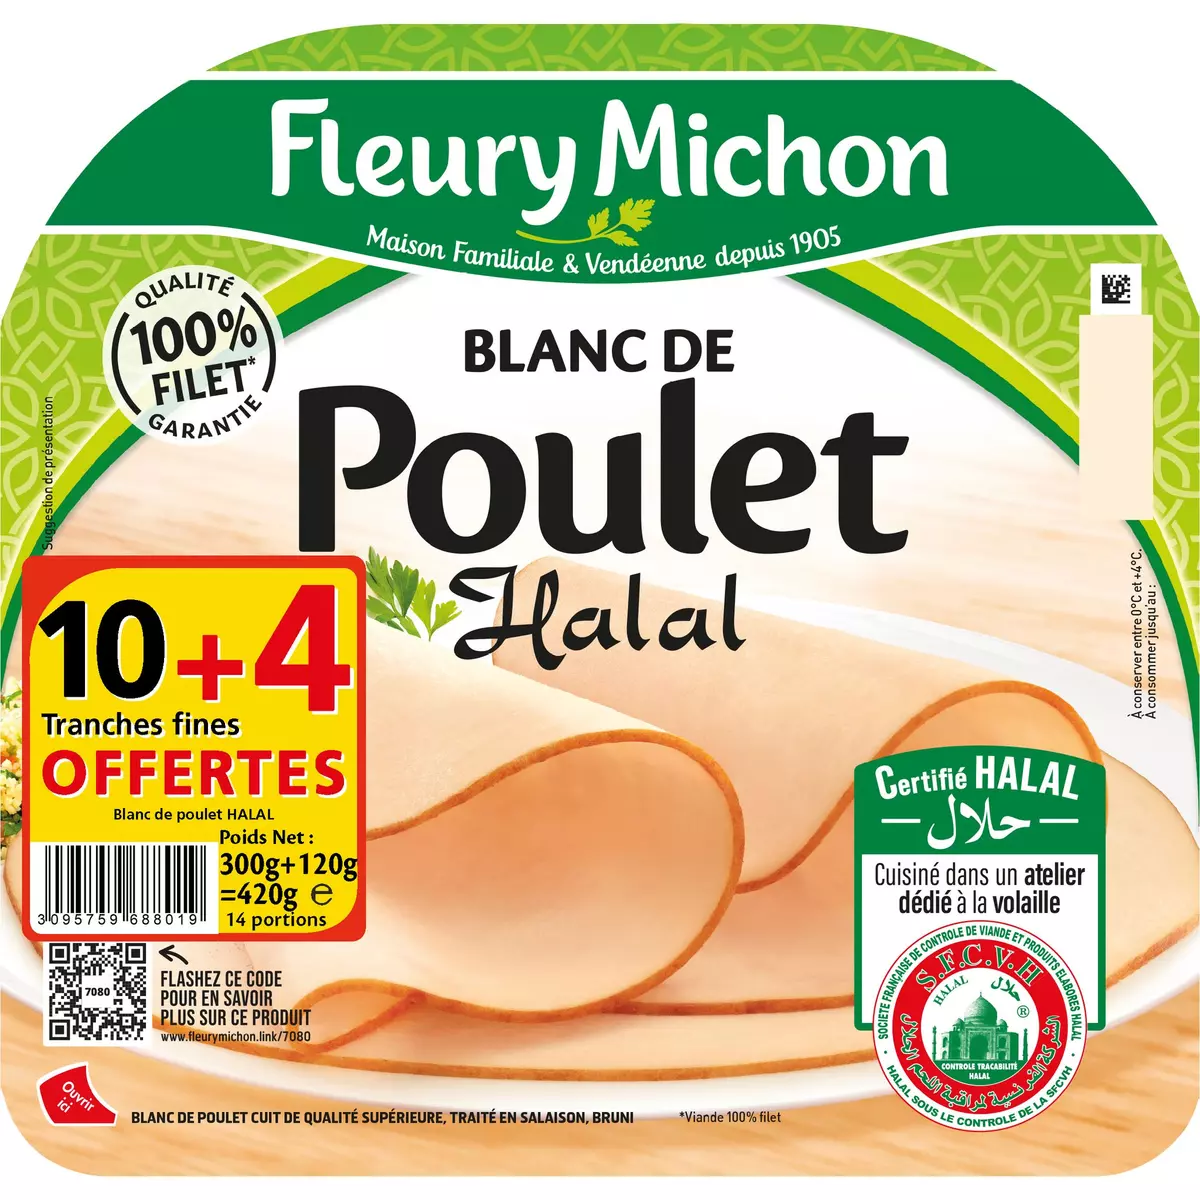 FLEURY MICHON Blanc de poulet halal tranches fines 10+4 offertes 420g